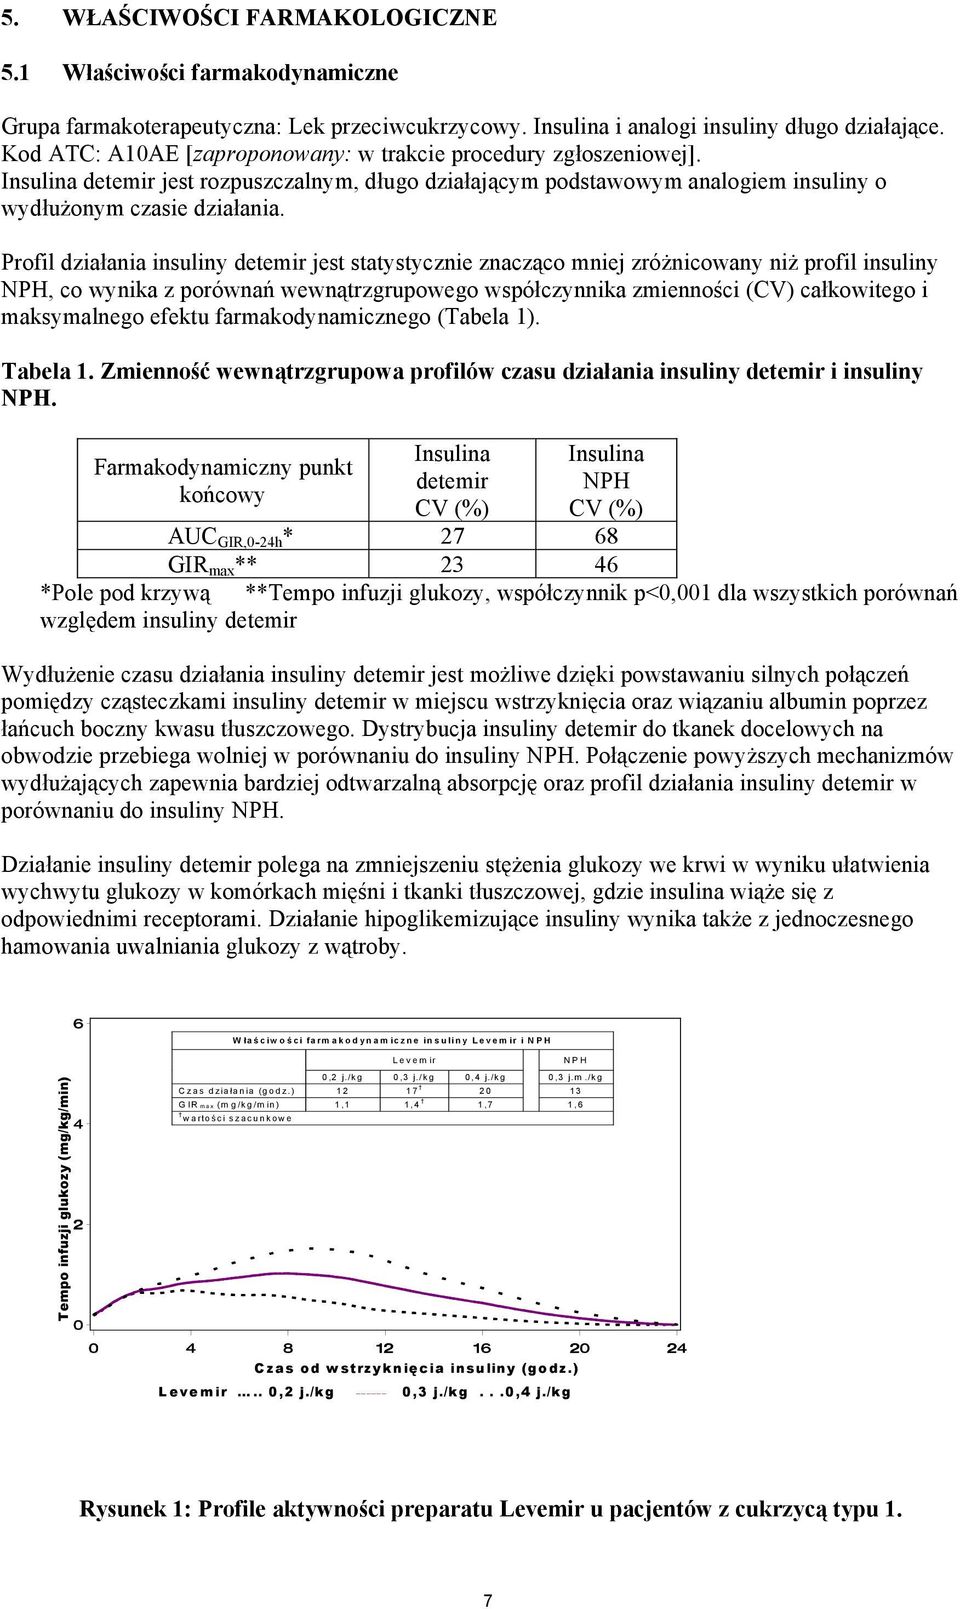 Profil działania insuliny detemir jest statystycznie znacząco mniej zróżnicowany niż profil insuliny NPH, co wynika z porównań wewnątrzgrupowego współczynnika zmienności (CV) całkowitego i